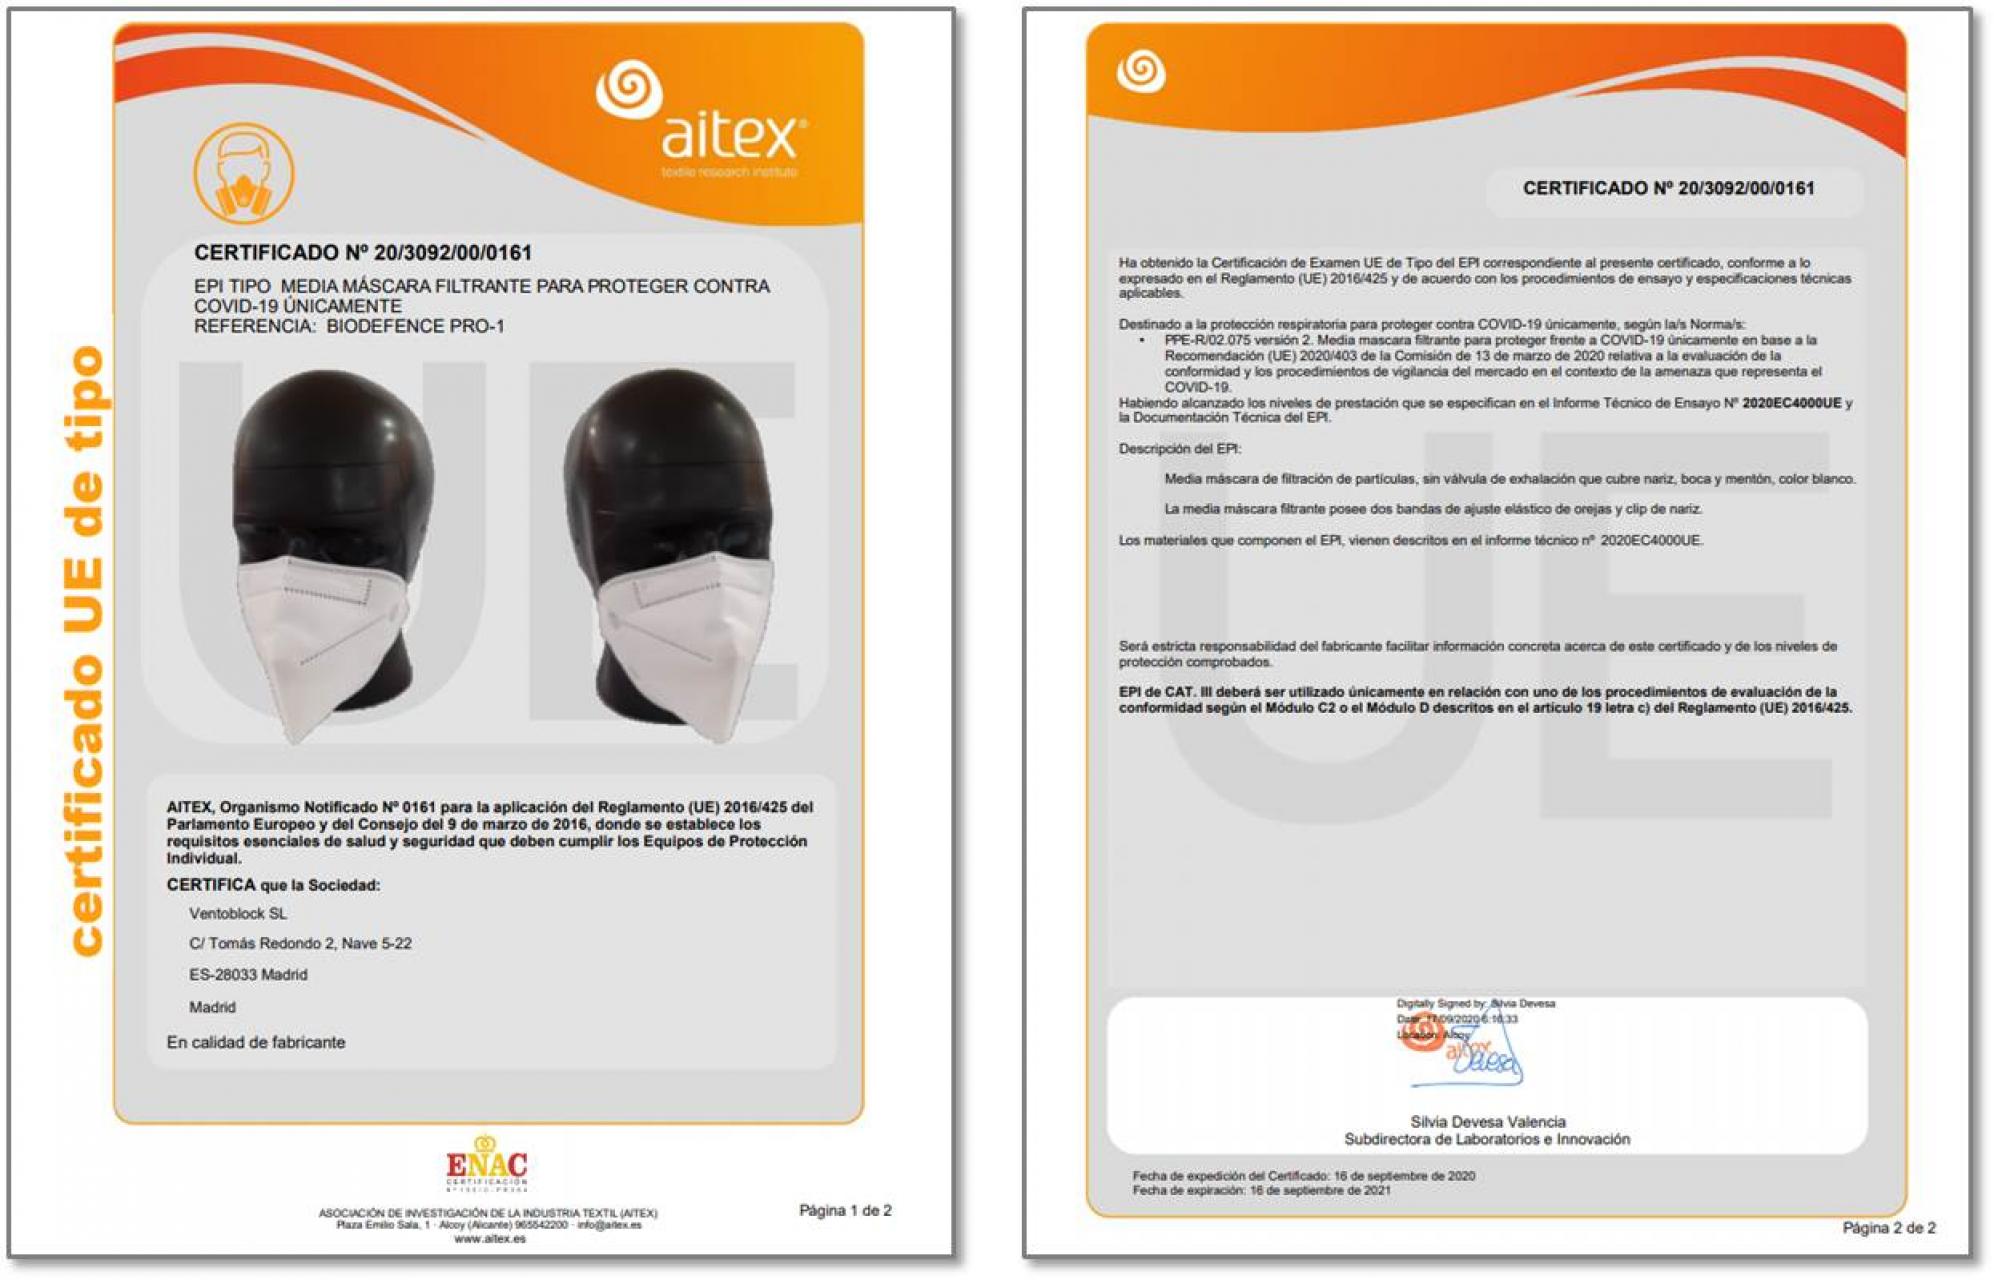 Masacarilla FFP2 Biodefence - Fabricada en España y Homologada en la UE por AITEX (CE 0161)